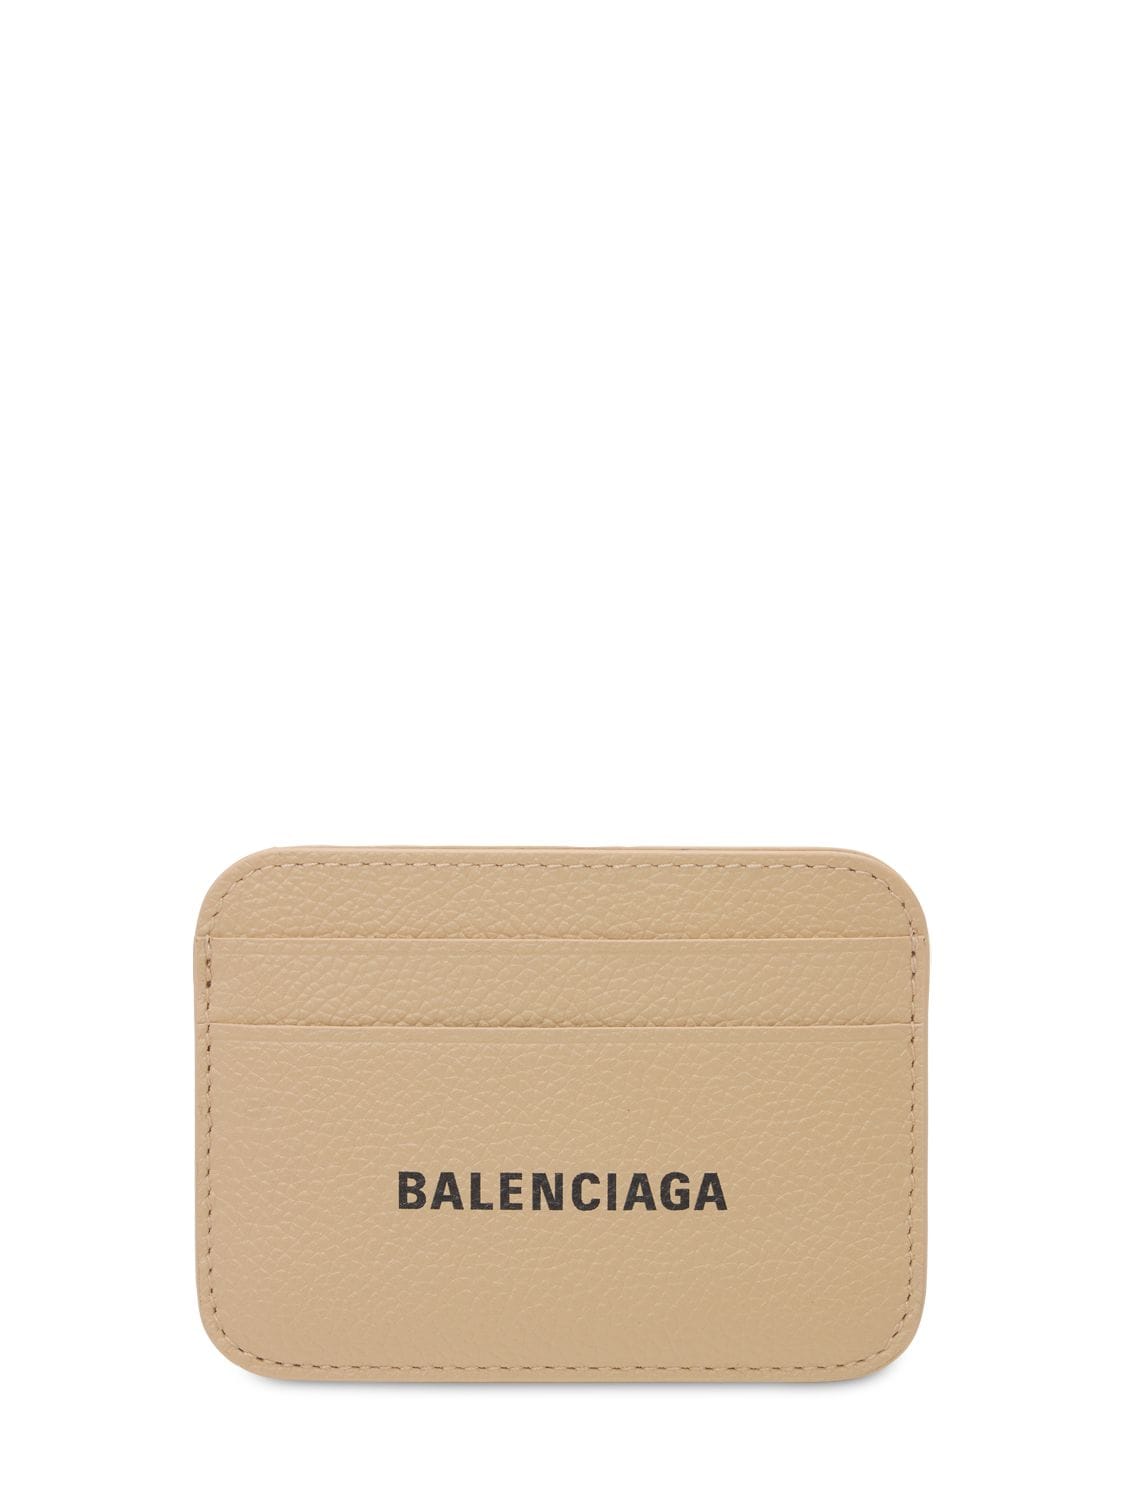 BALENCIAGA LEATHER CARD HOLDER,73IWD2051-MJC2MA2